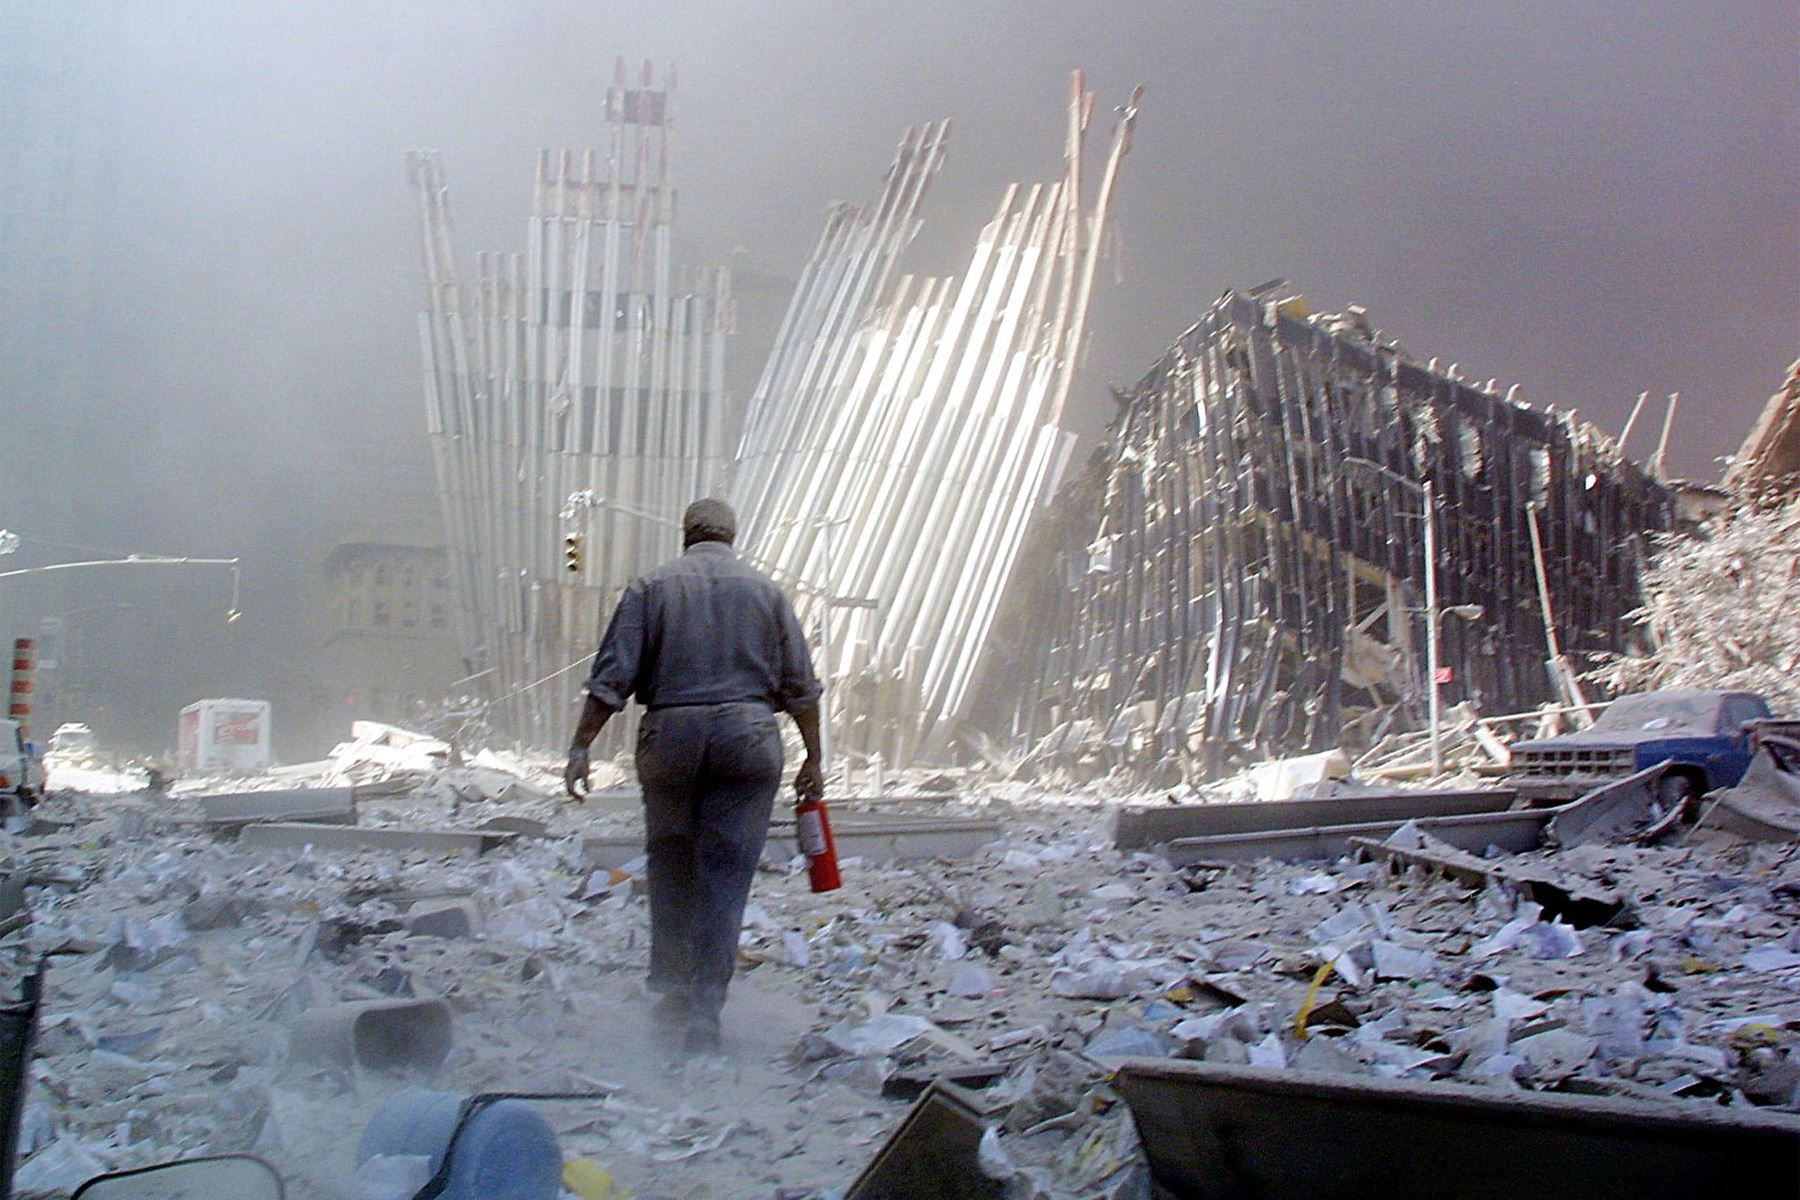 Un hombre con un extintor de incendios camina entre los escombros después del colapso de la primera torre del World Trade Center el 11 de septiembre de 2001, en Nueva York.
Foto: AFP